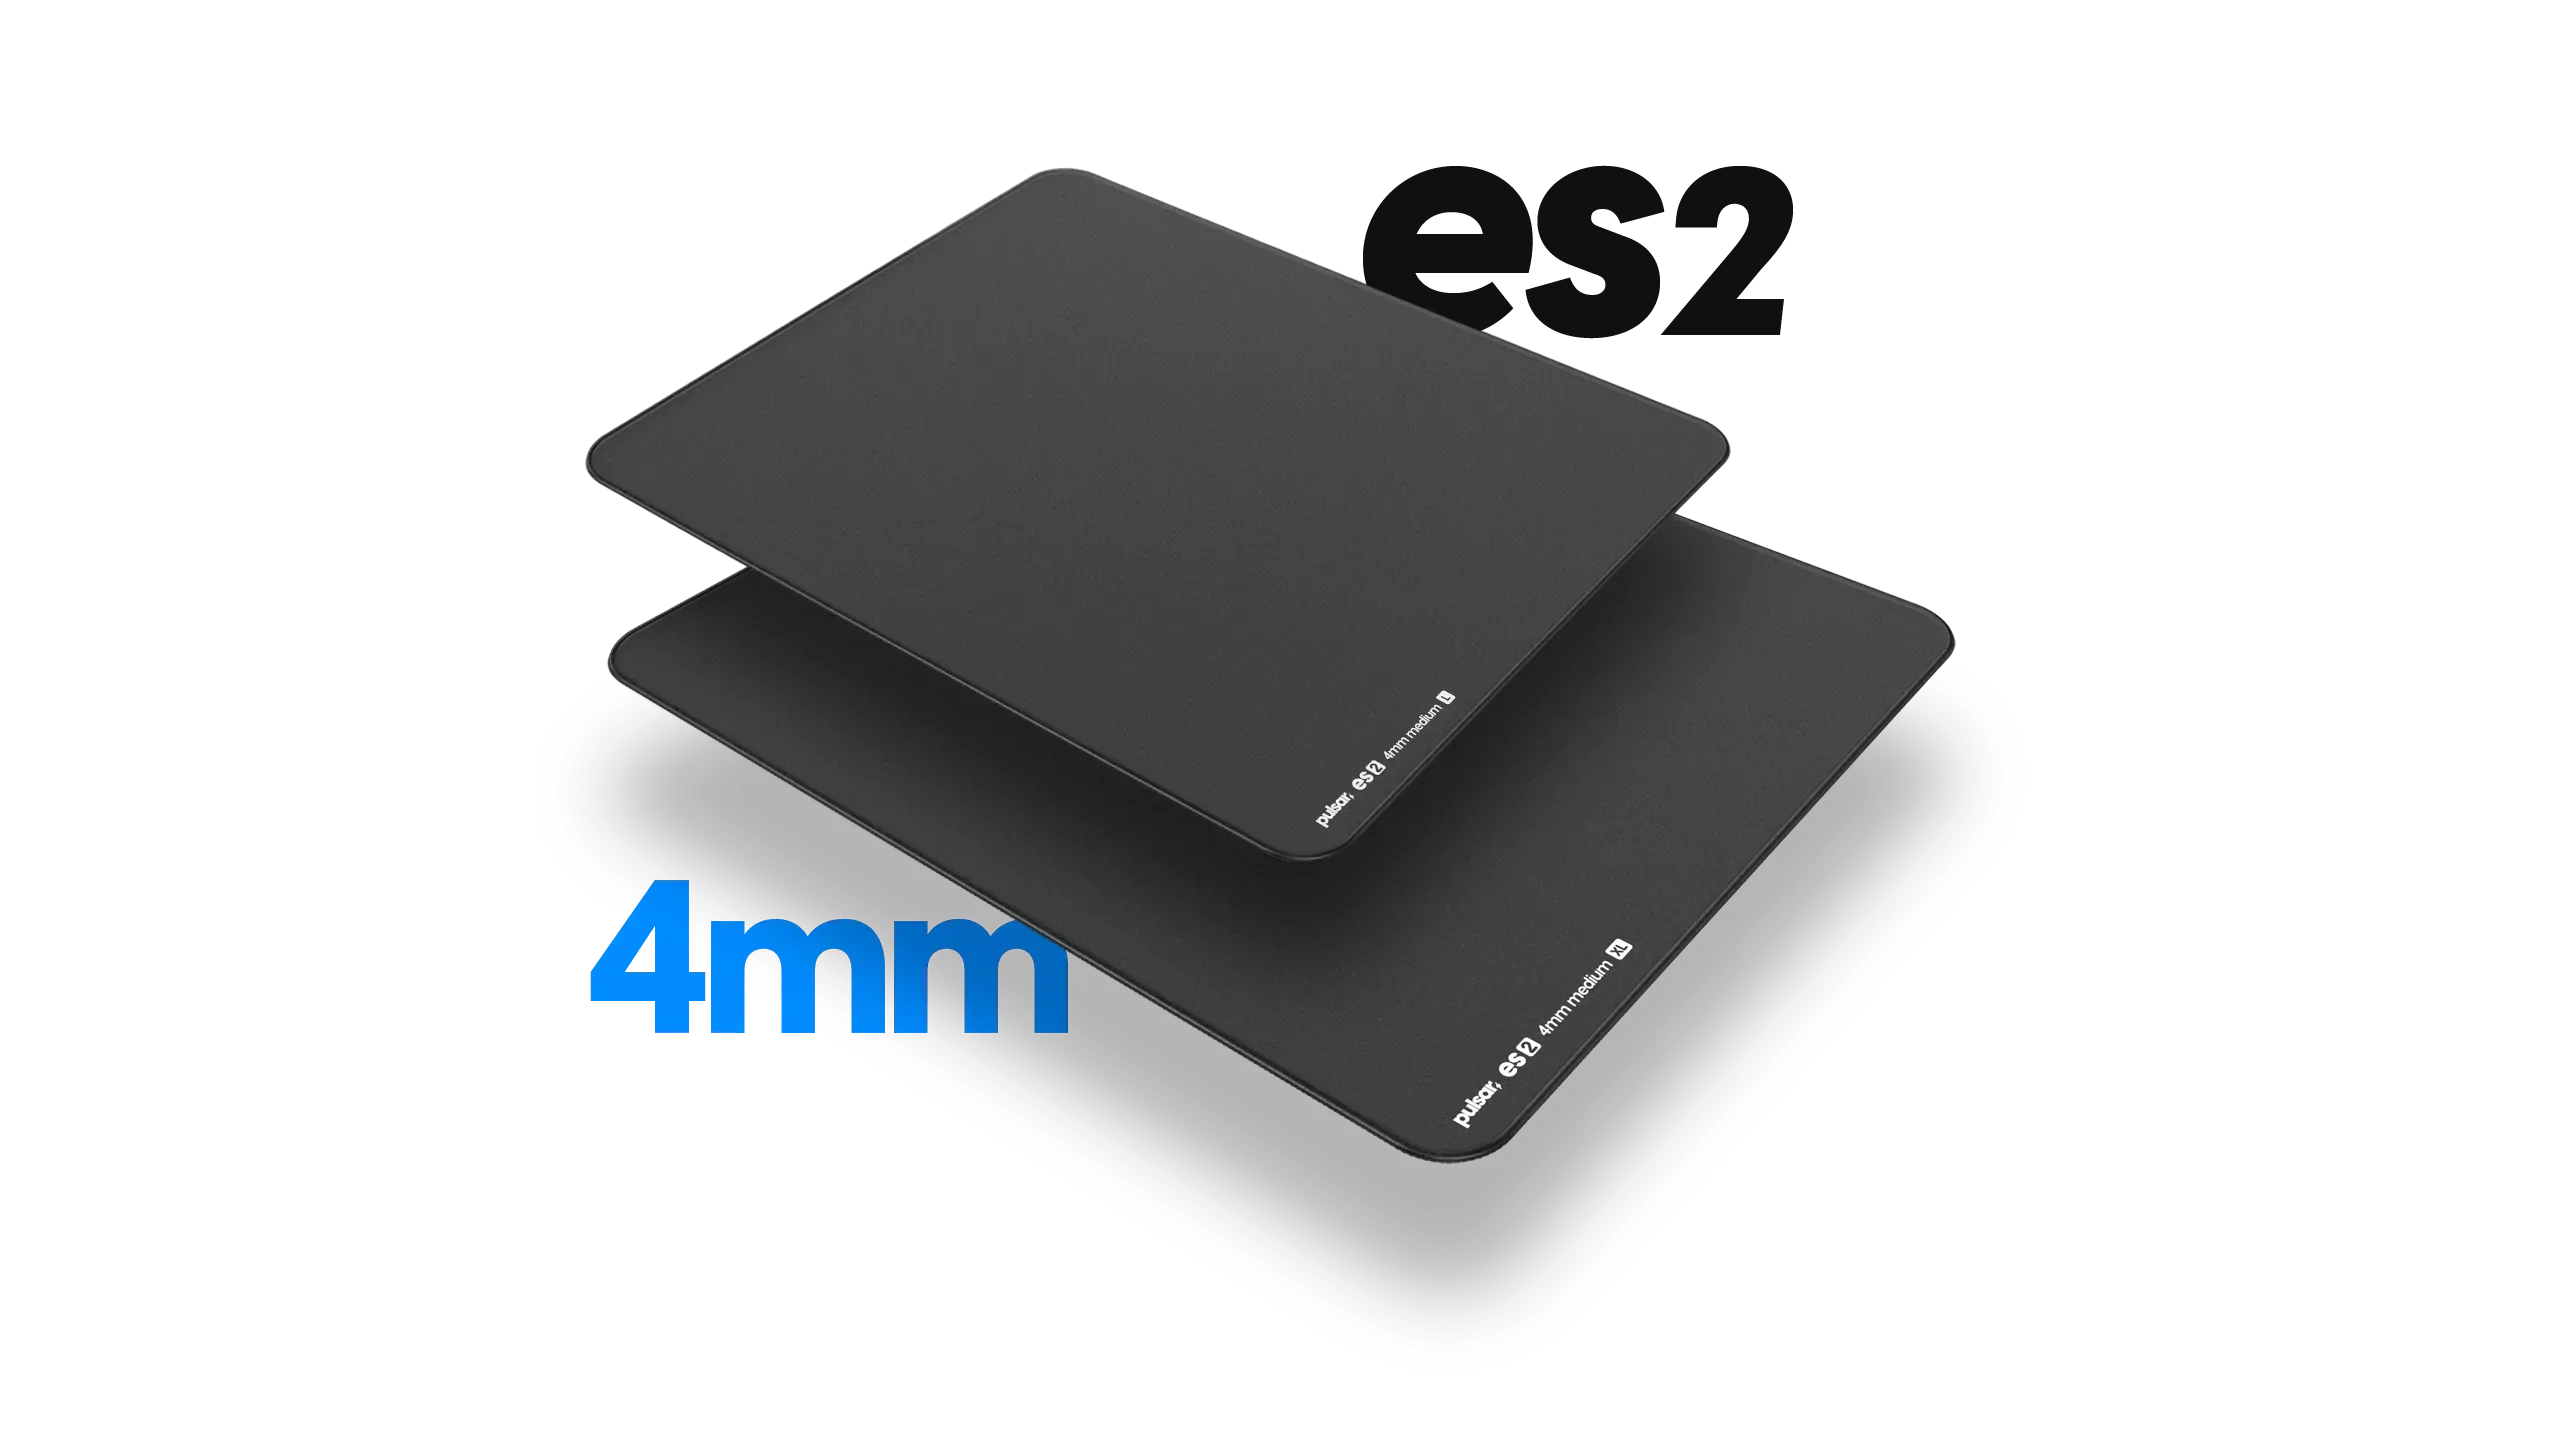 [Dep Edition]ES2 eSports Mousepad 4mm XL